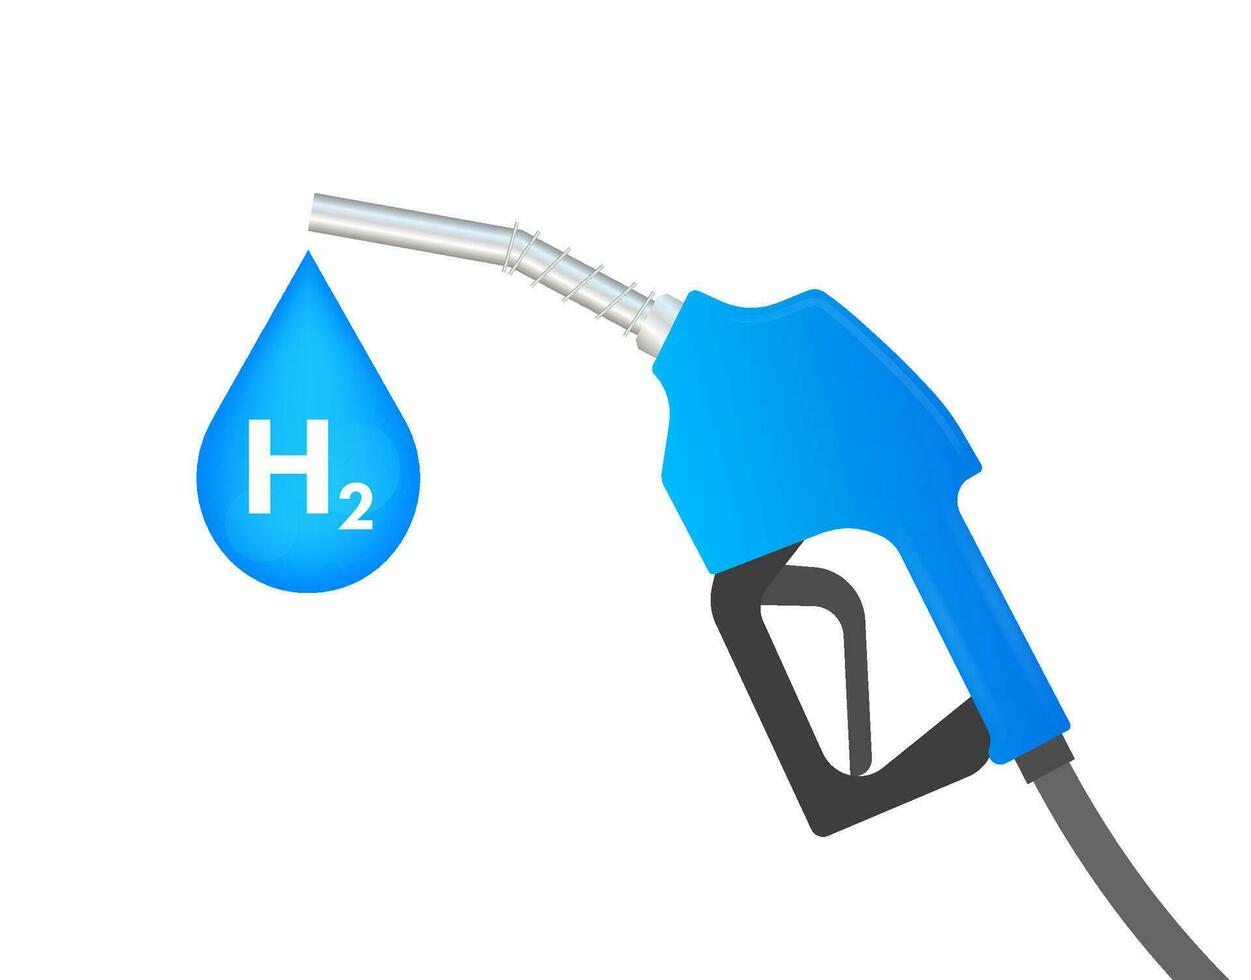 väte bil station, h2 gas. förnybar eco energi. vektor stock illustration